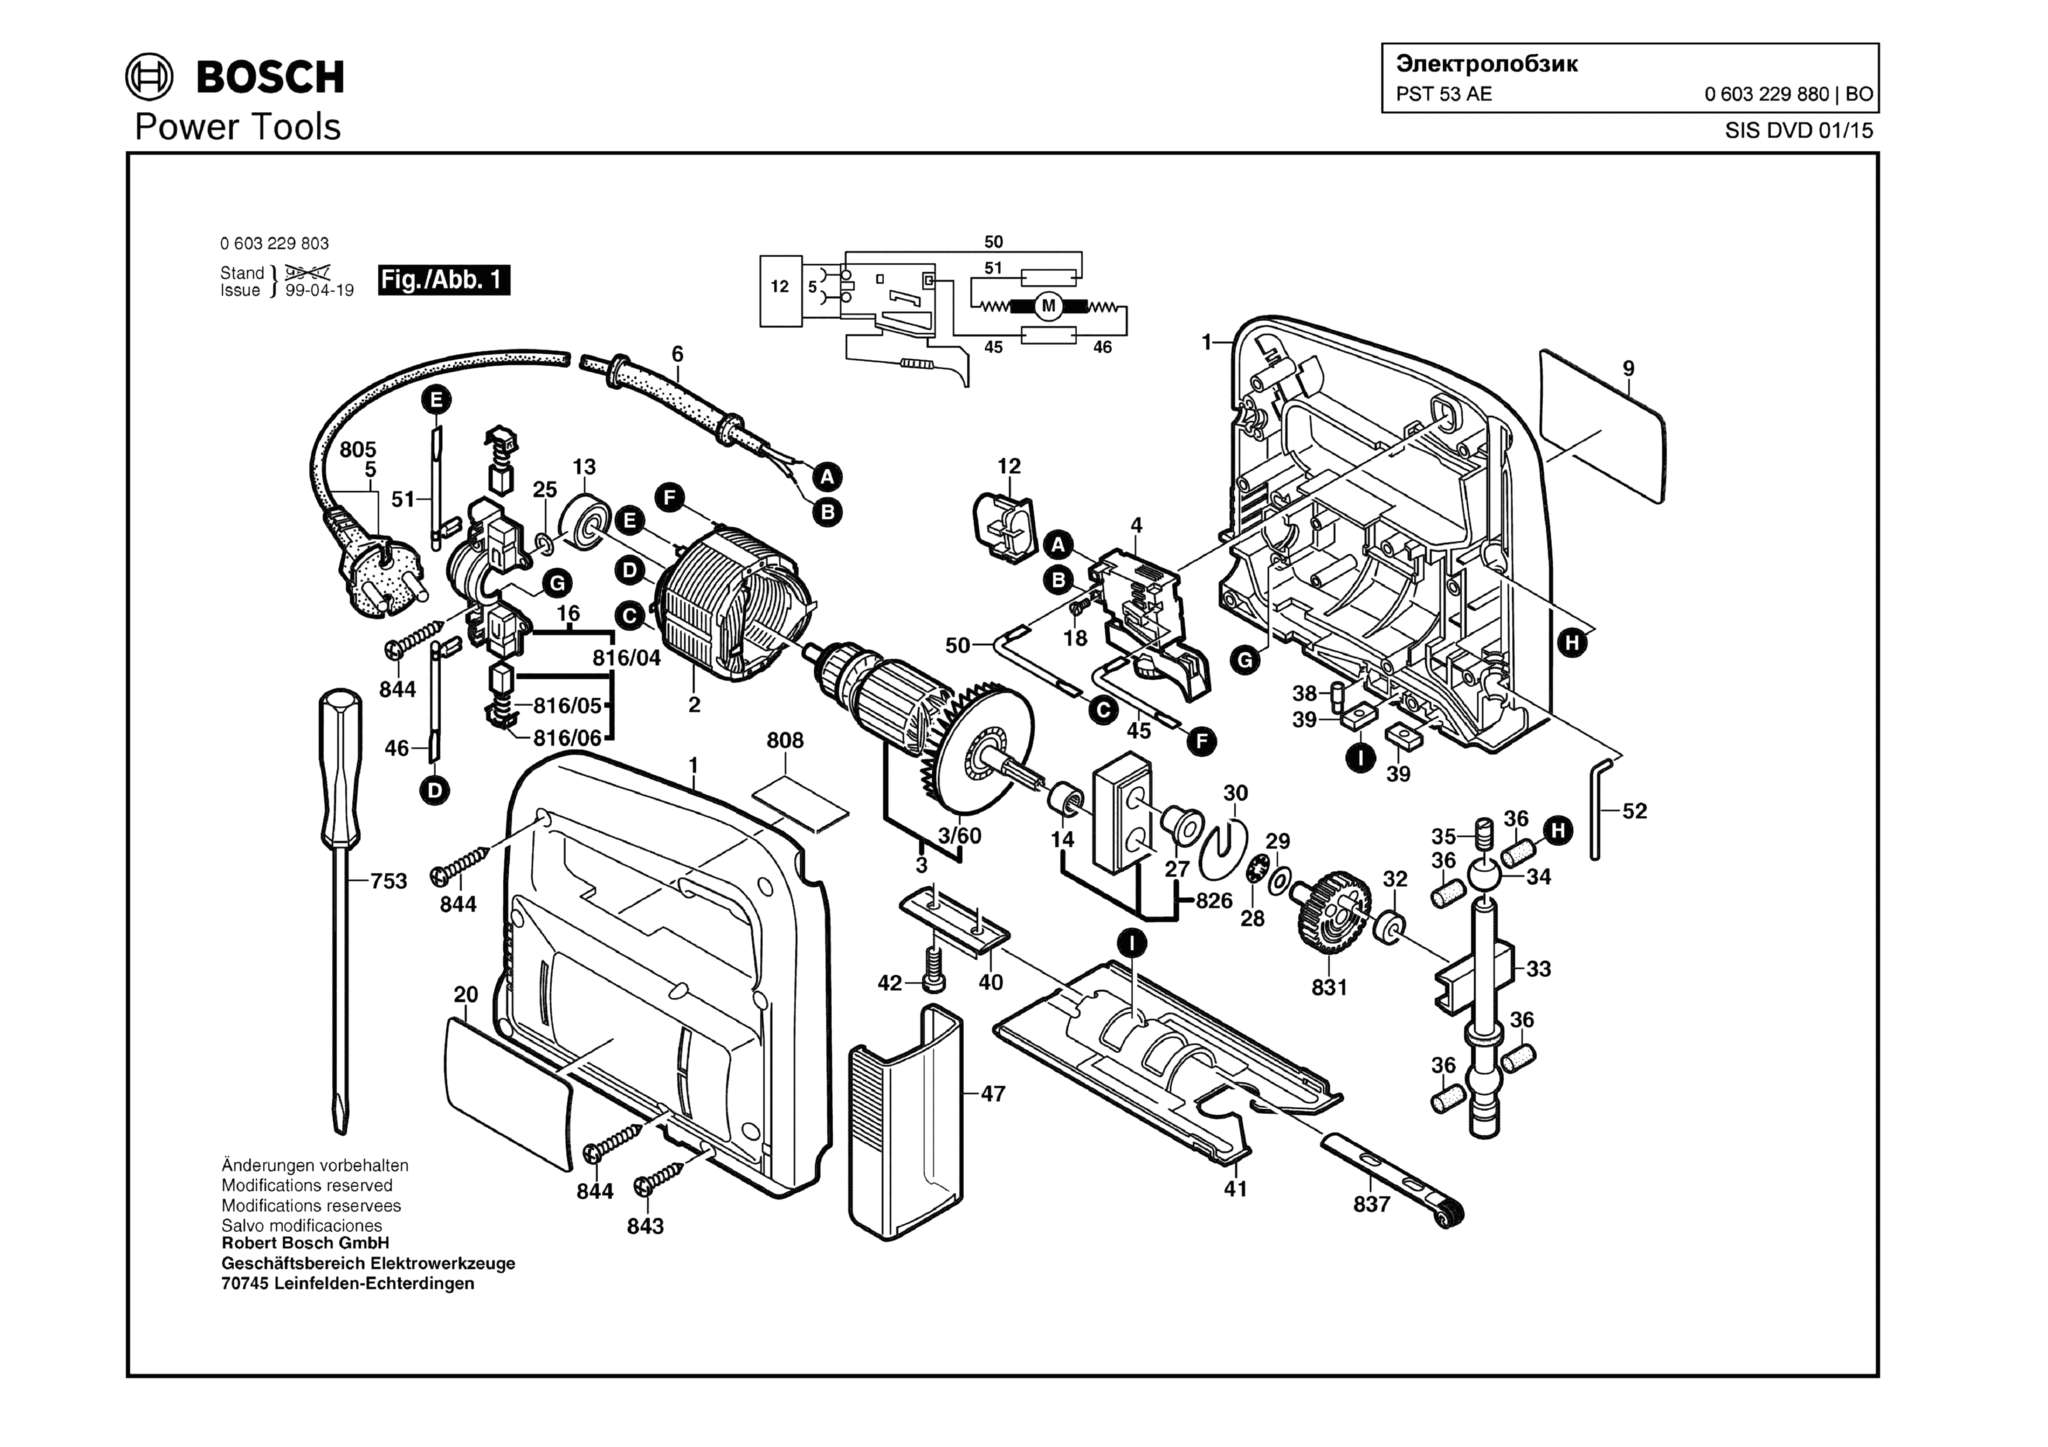 Запчасти, схема и деталировка Bosch PST 53 AE (ТИП 0603229880)